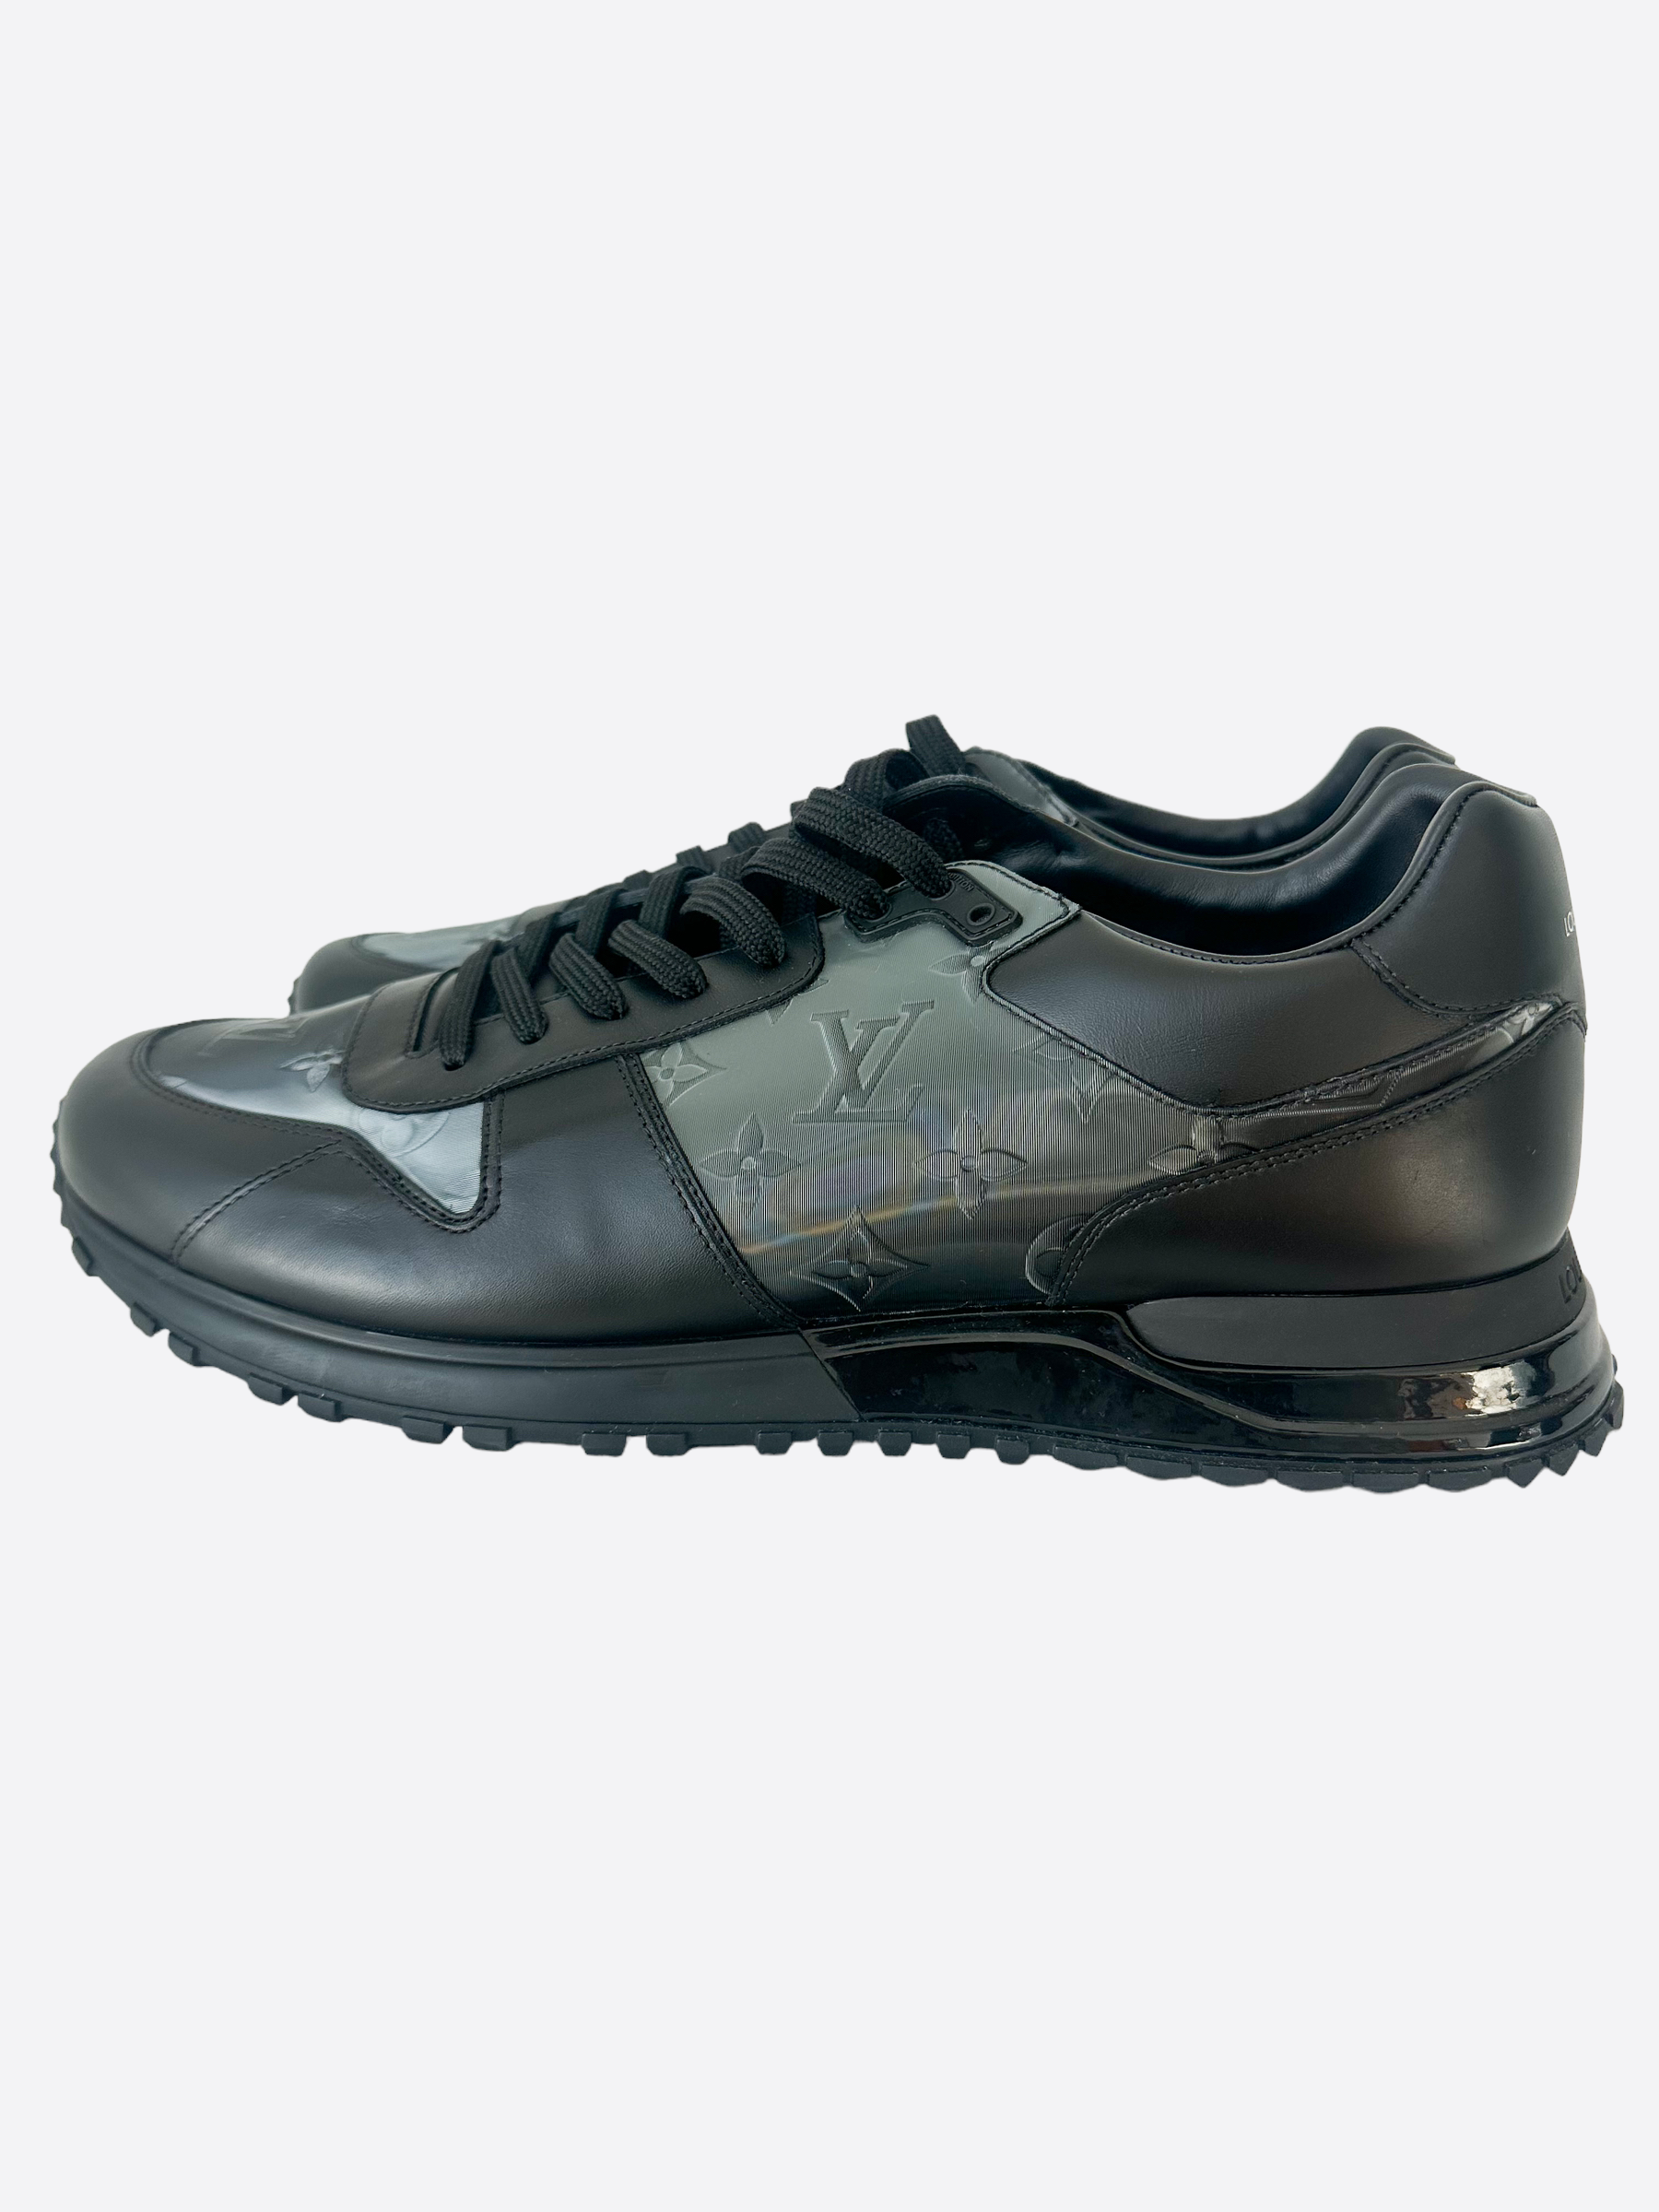 Louis Vuitton, Shoes, Louis Vuitton Runaway Sneakers